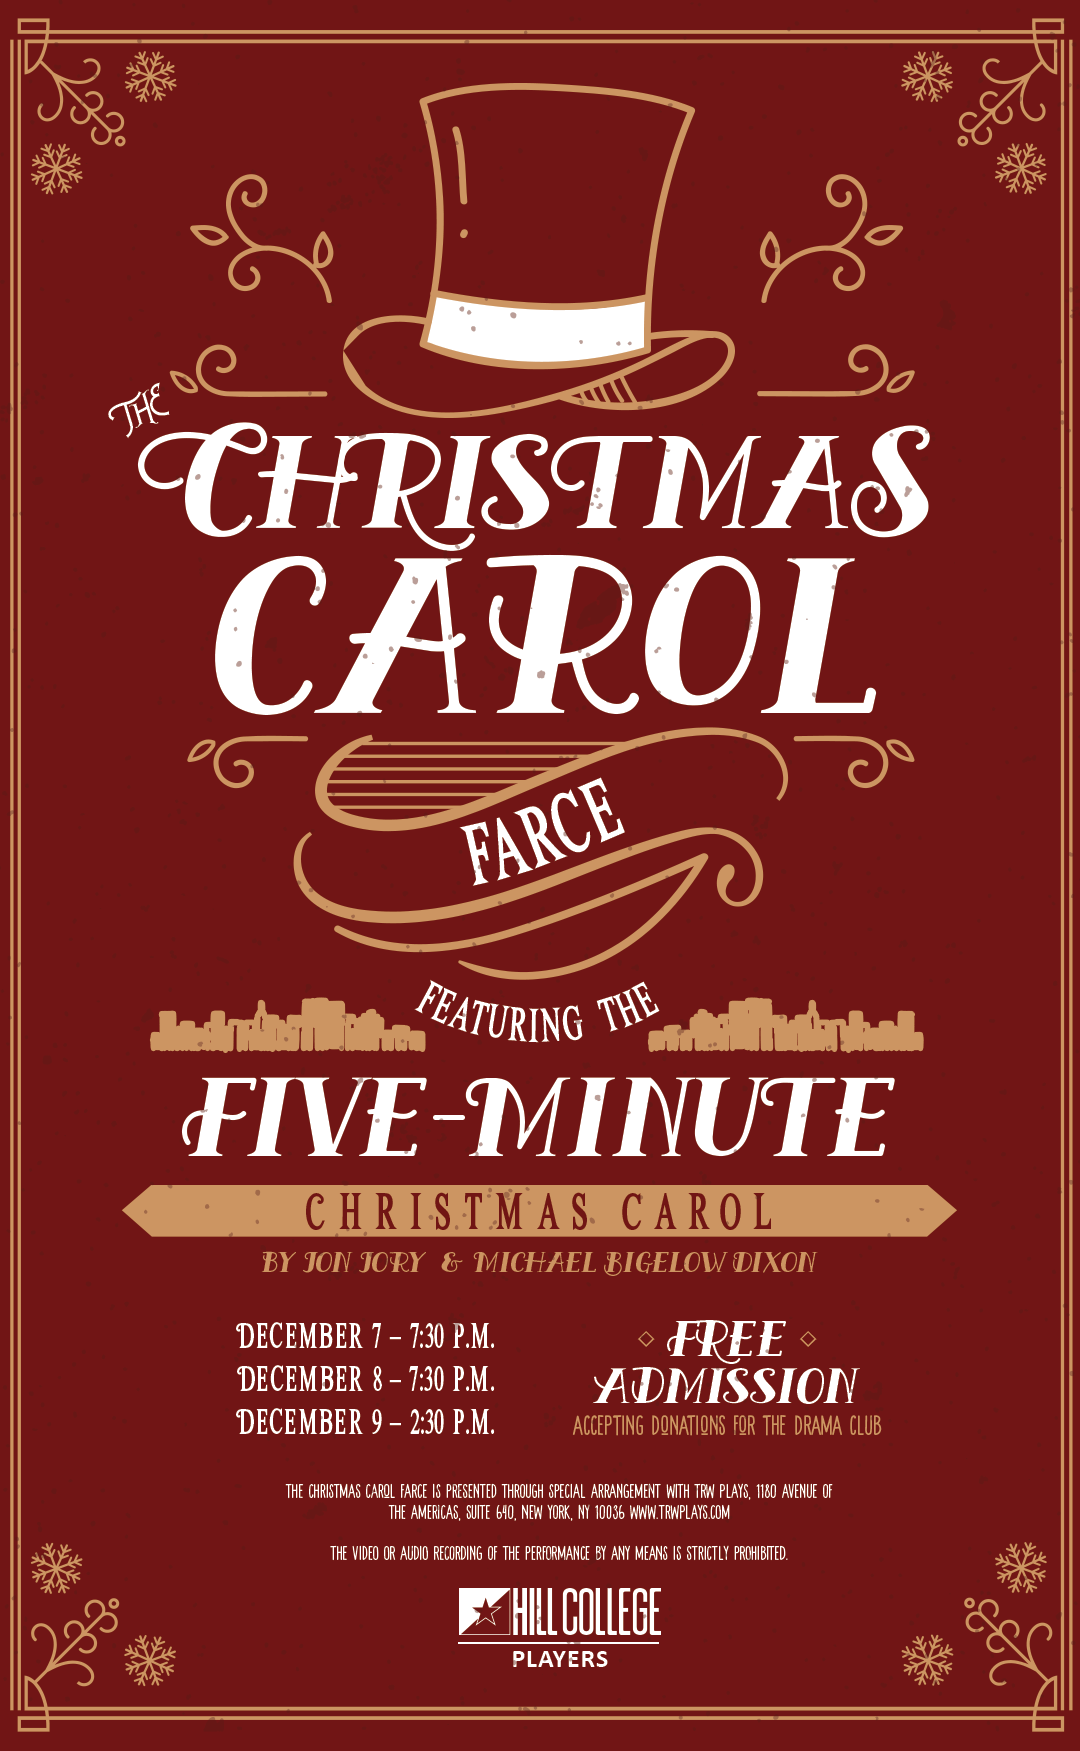 Christmas Carol Farce